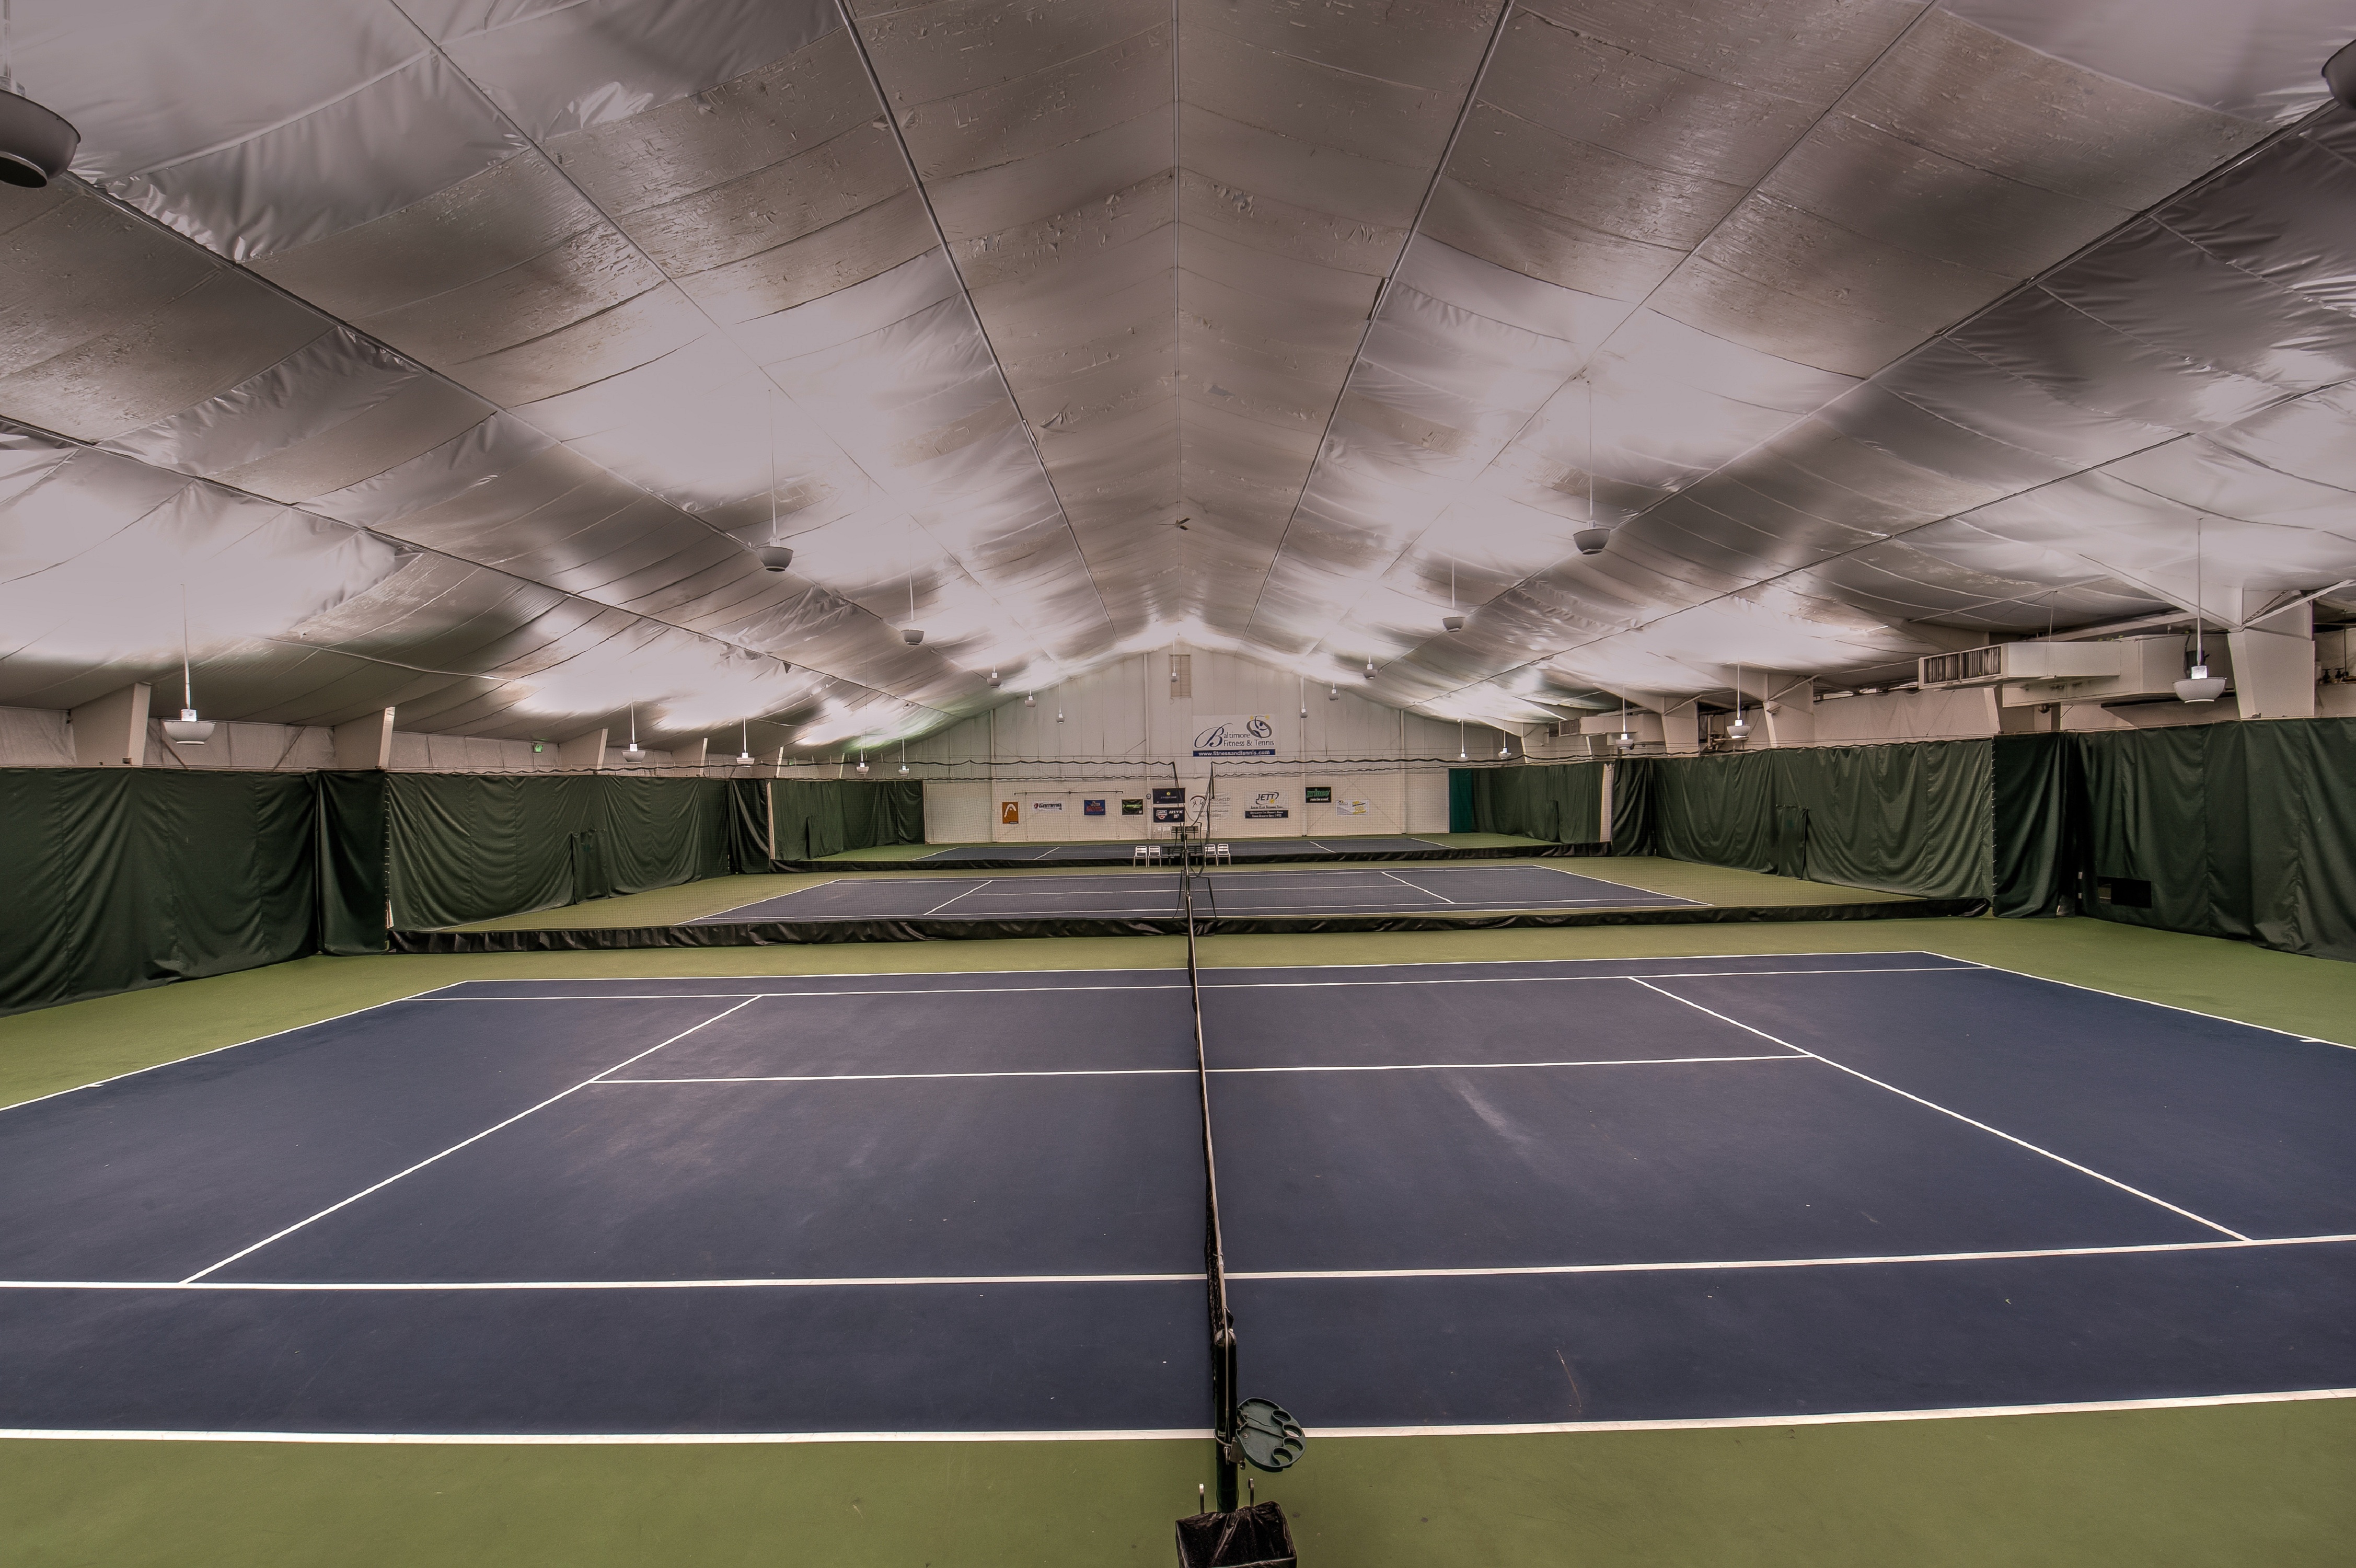 Wide View of Indoor Tennis Courts